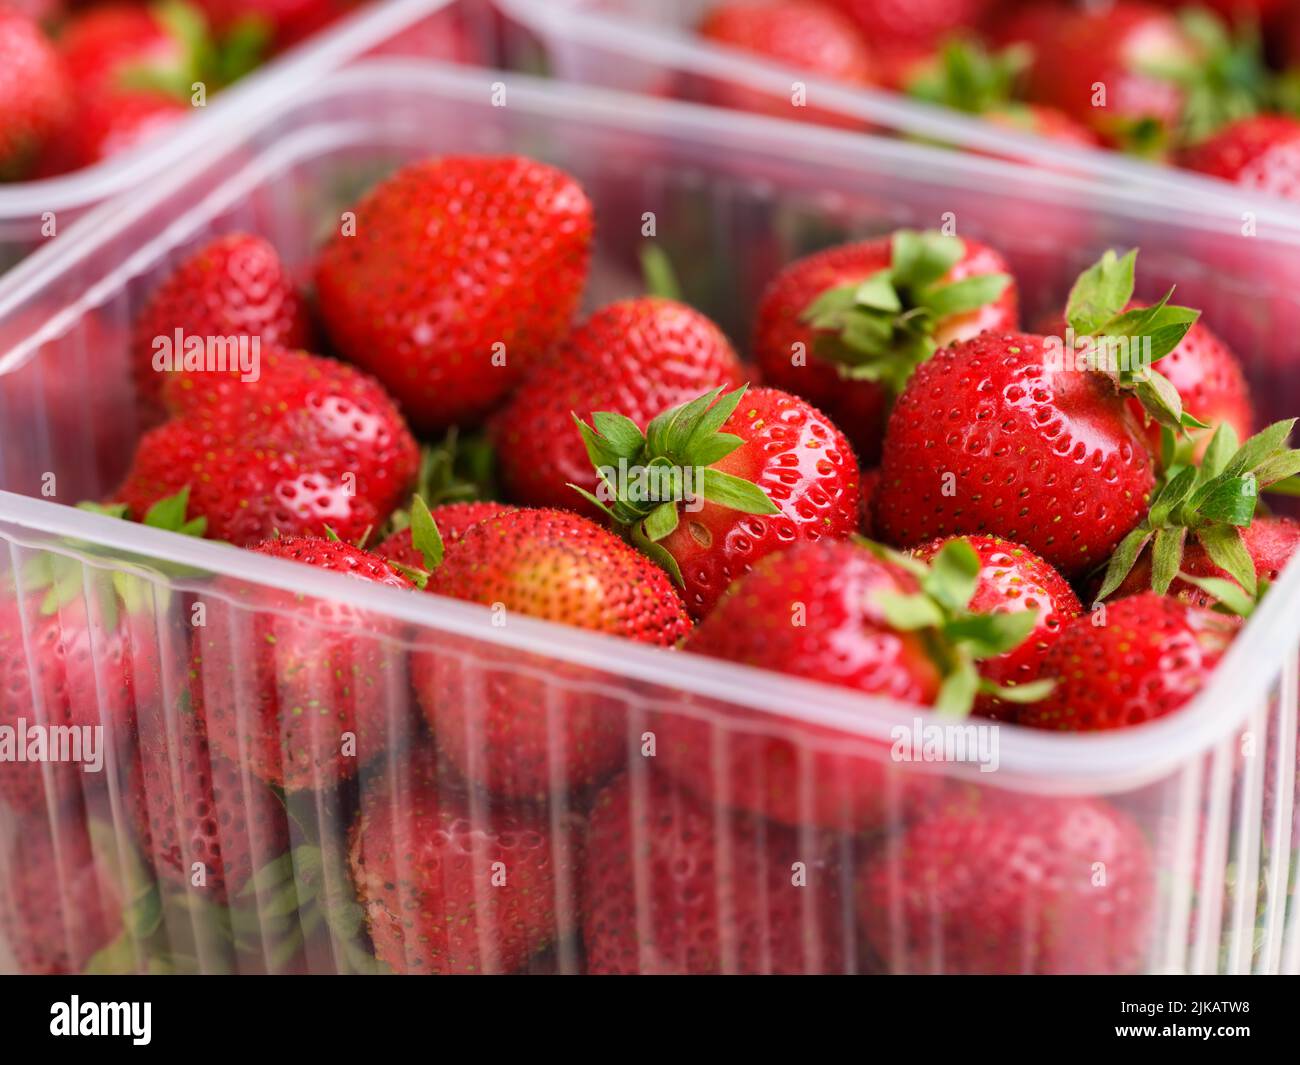 Un primer plano de un recipiente de plástico con fresas rojas orgánicas en él Foto de stock